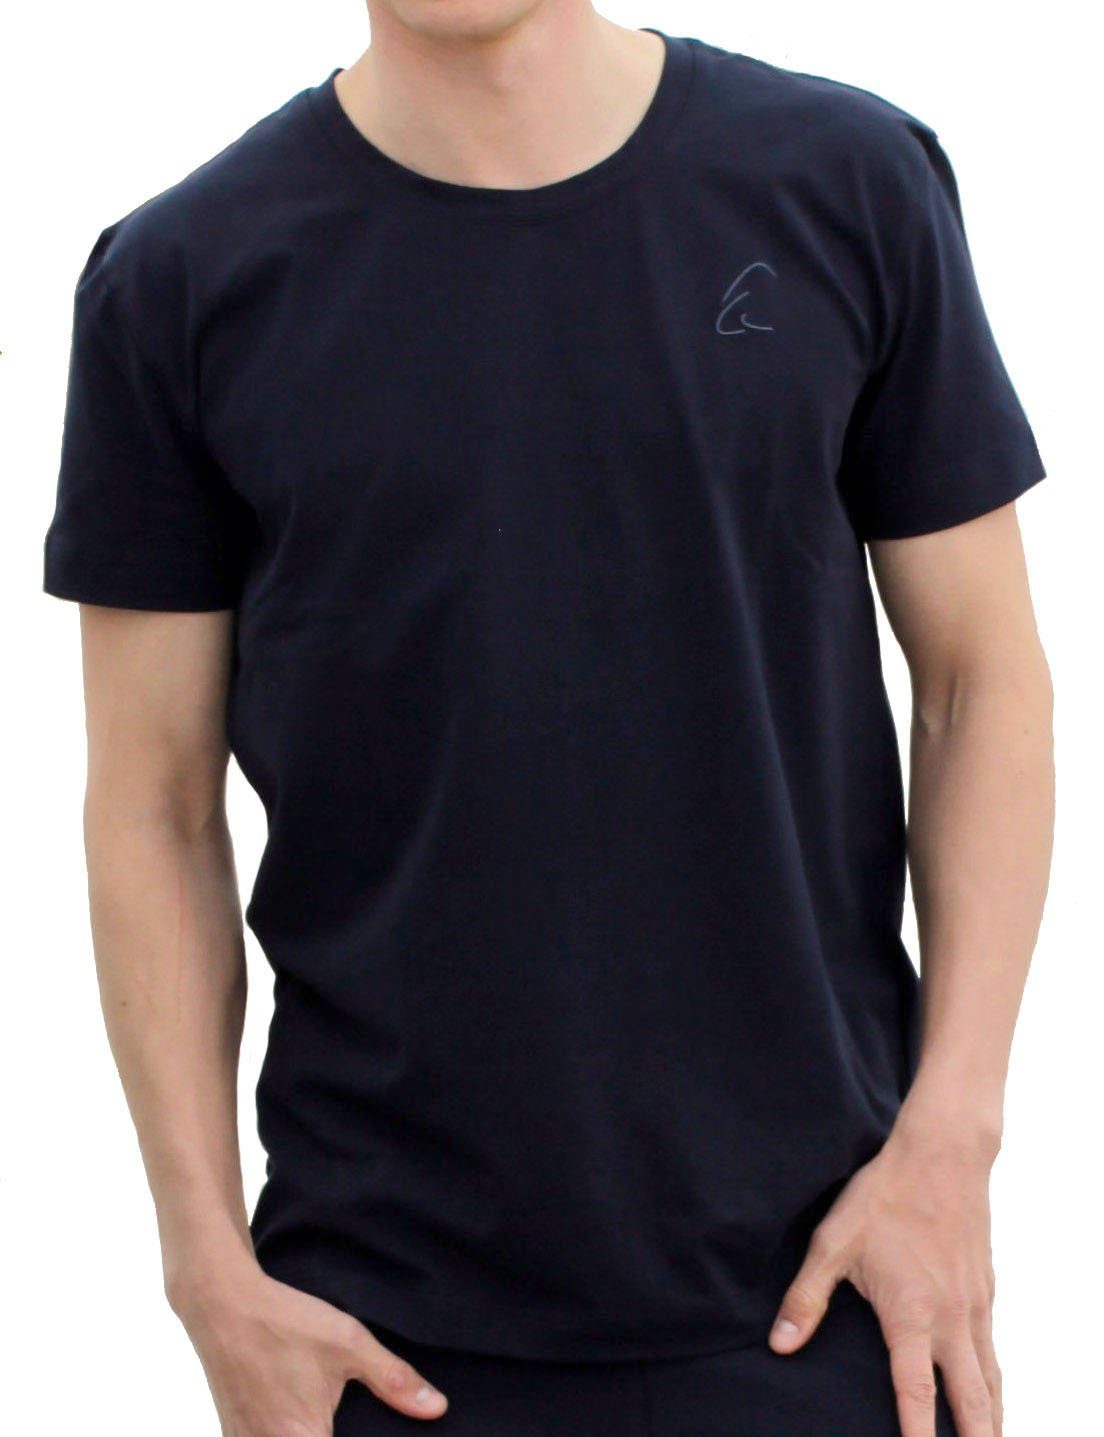 T-Shirt für Bhaalu auch Herren Sommer Yogashirt geeignet ESPARTO leicht im Nachtblau kühlend, unisex, gut